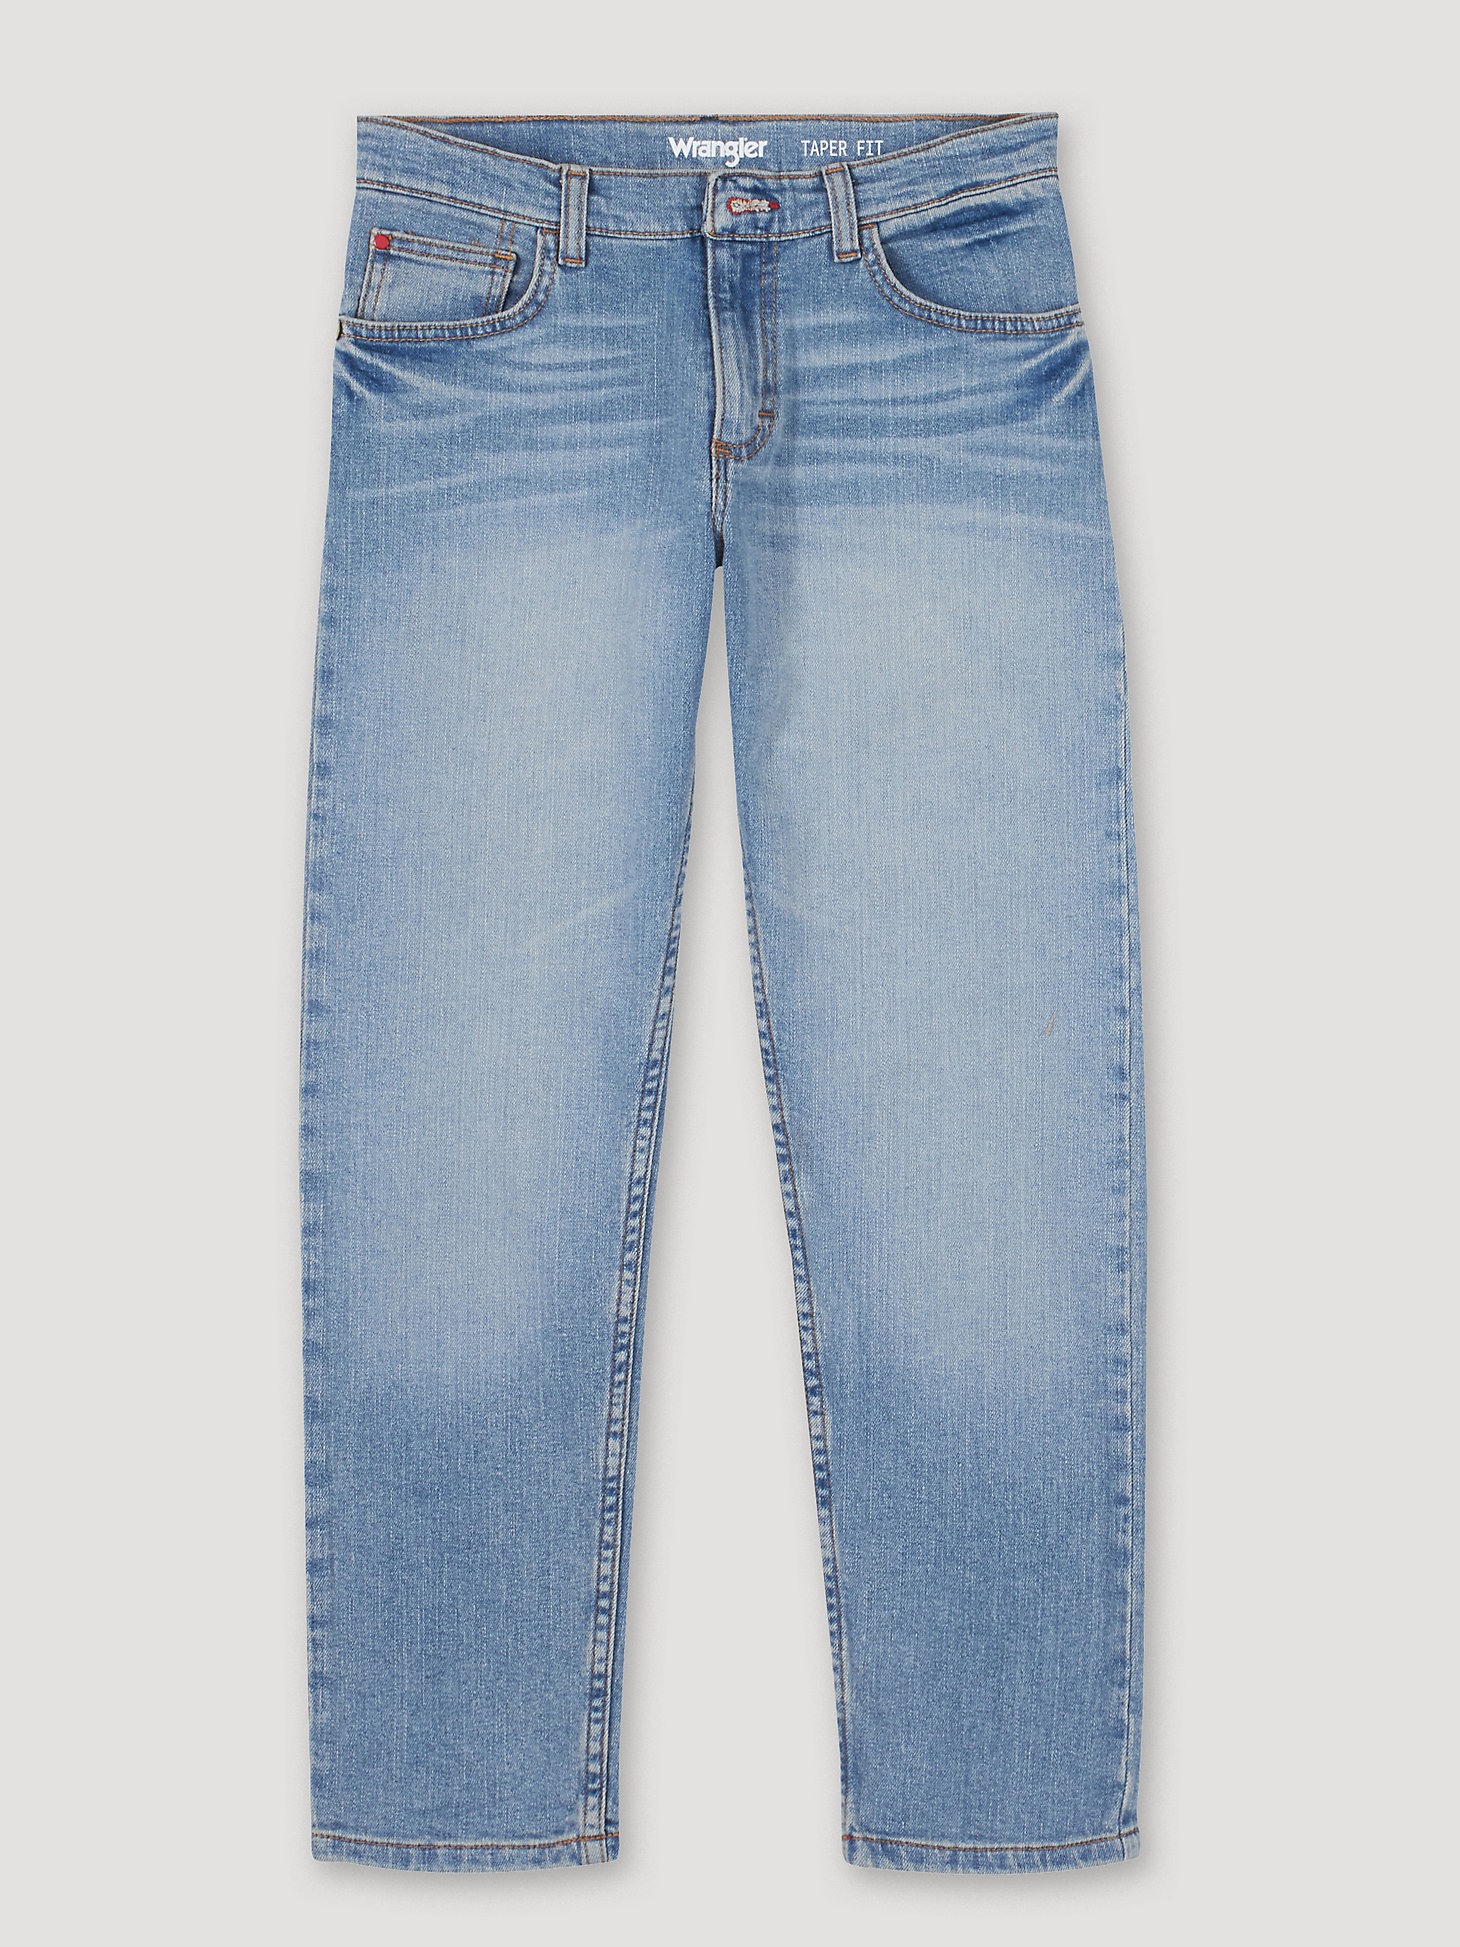 Arriba 81+ imagen wrangler jeans tapered - Thptnganamst.edu.vn